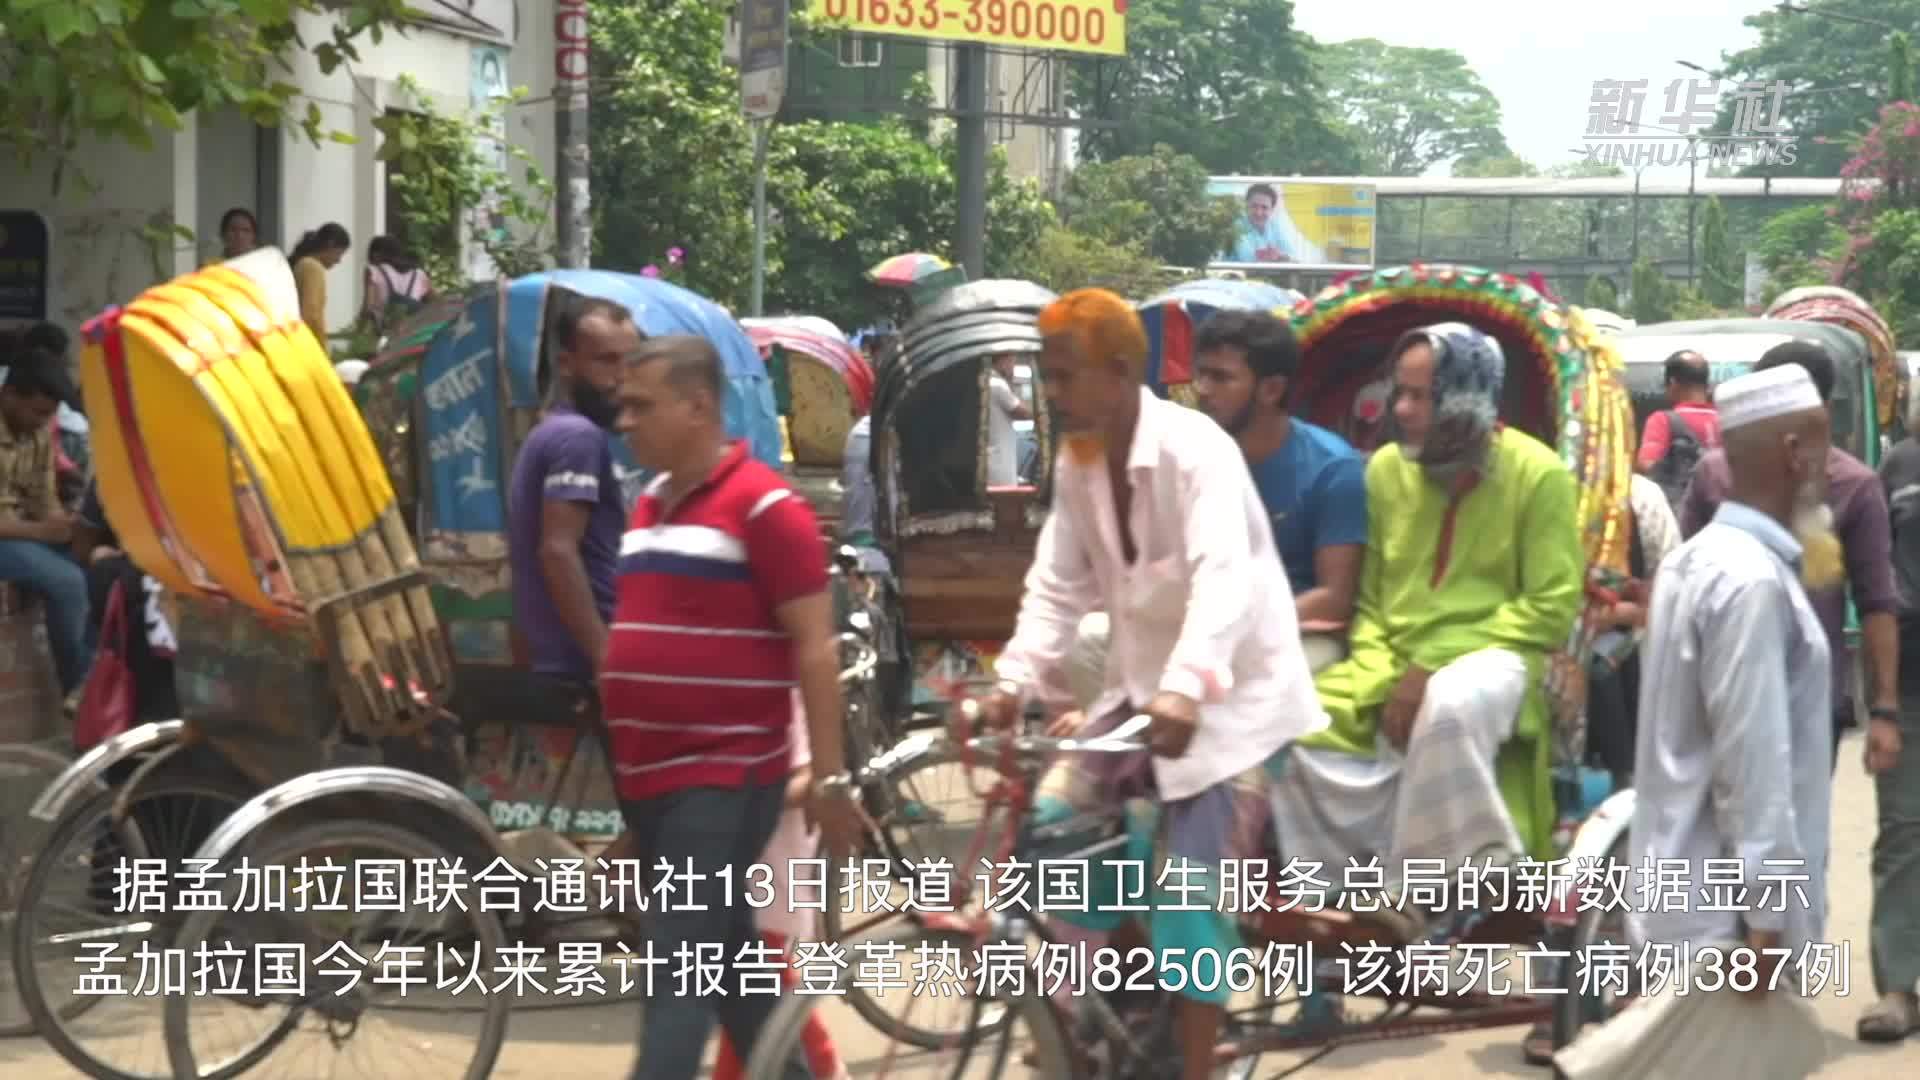 孟加拉国登革热病例数激增 世卫呼吁快速采取行动